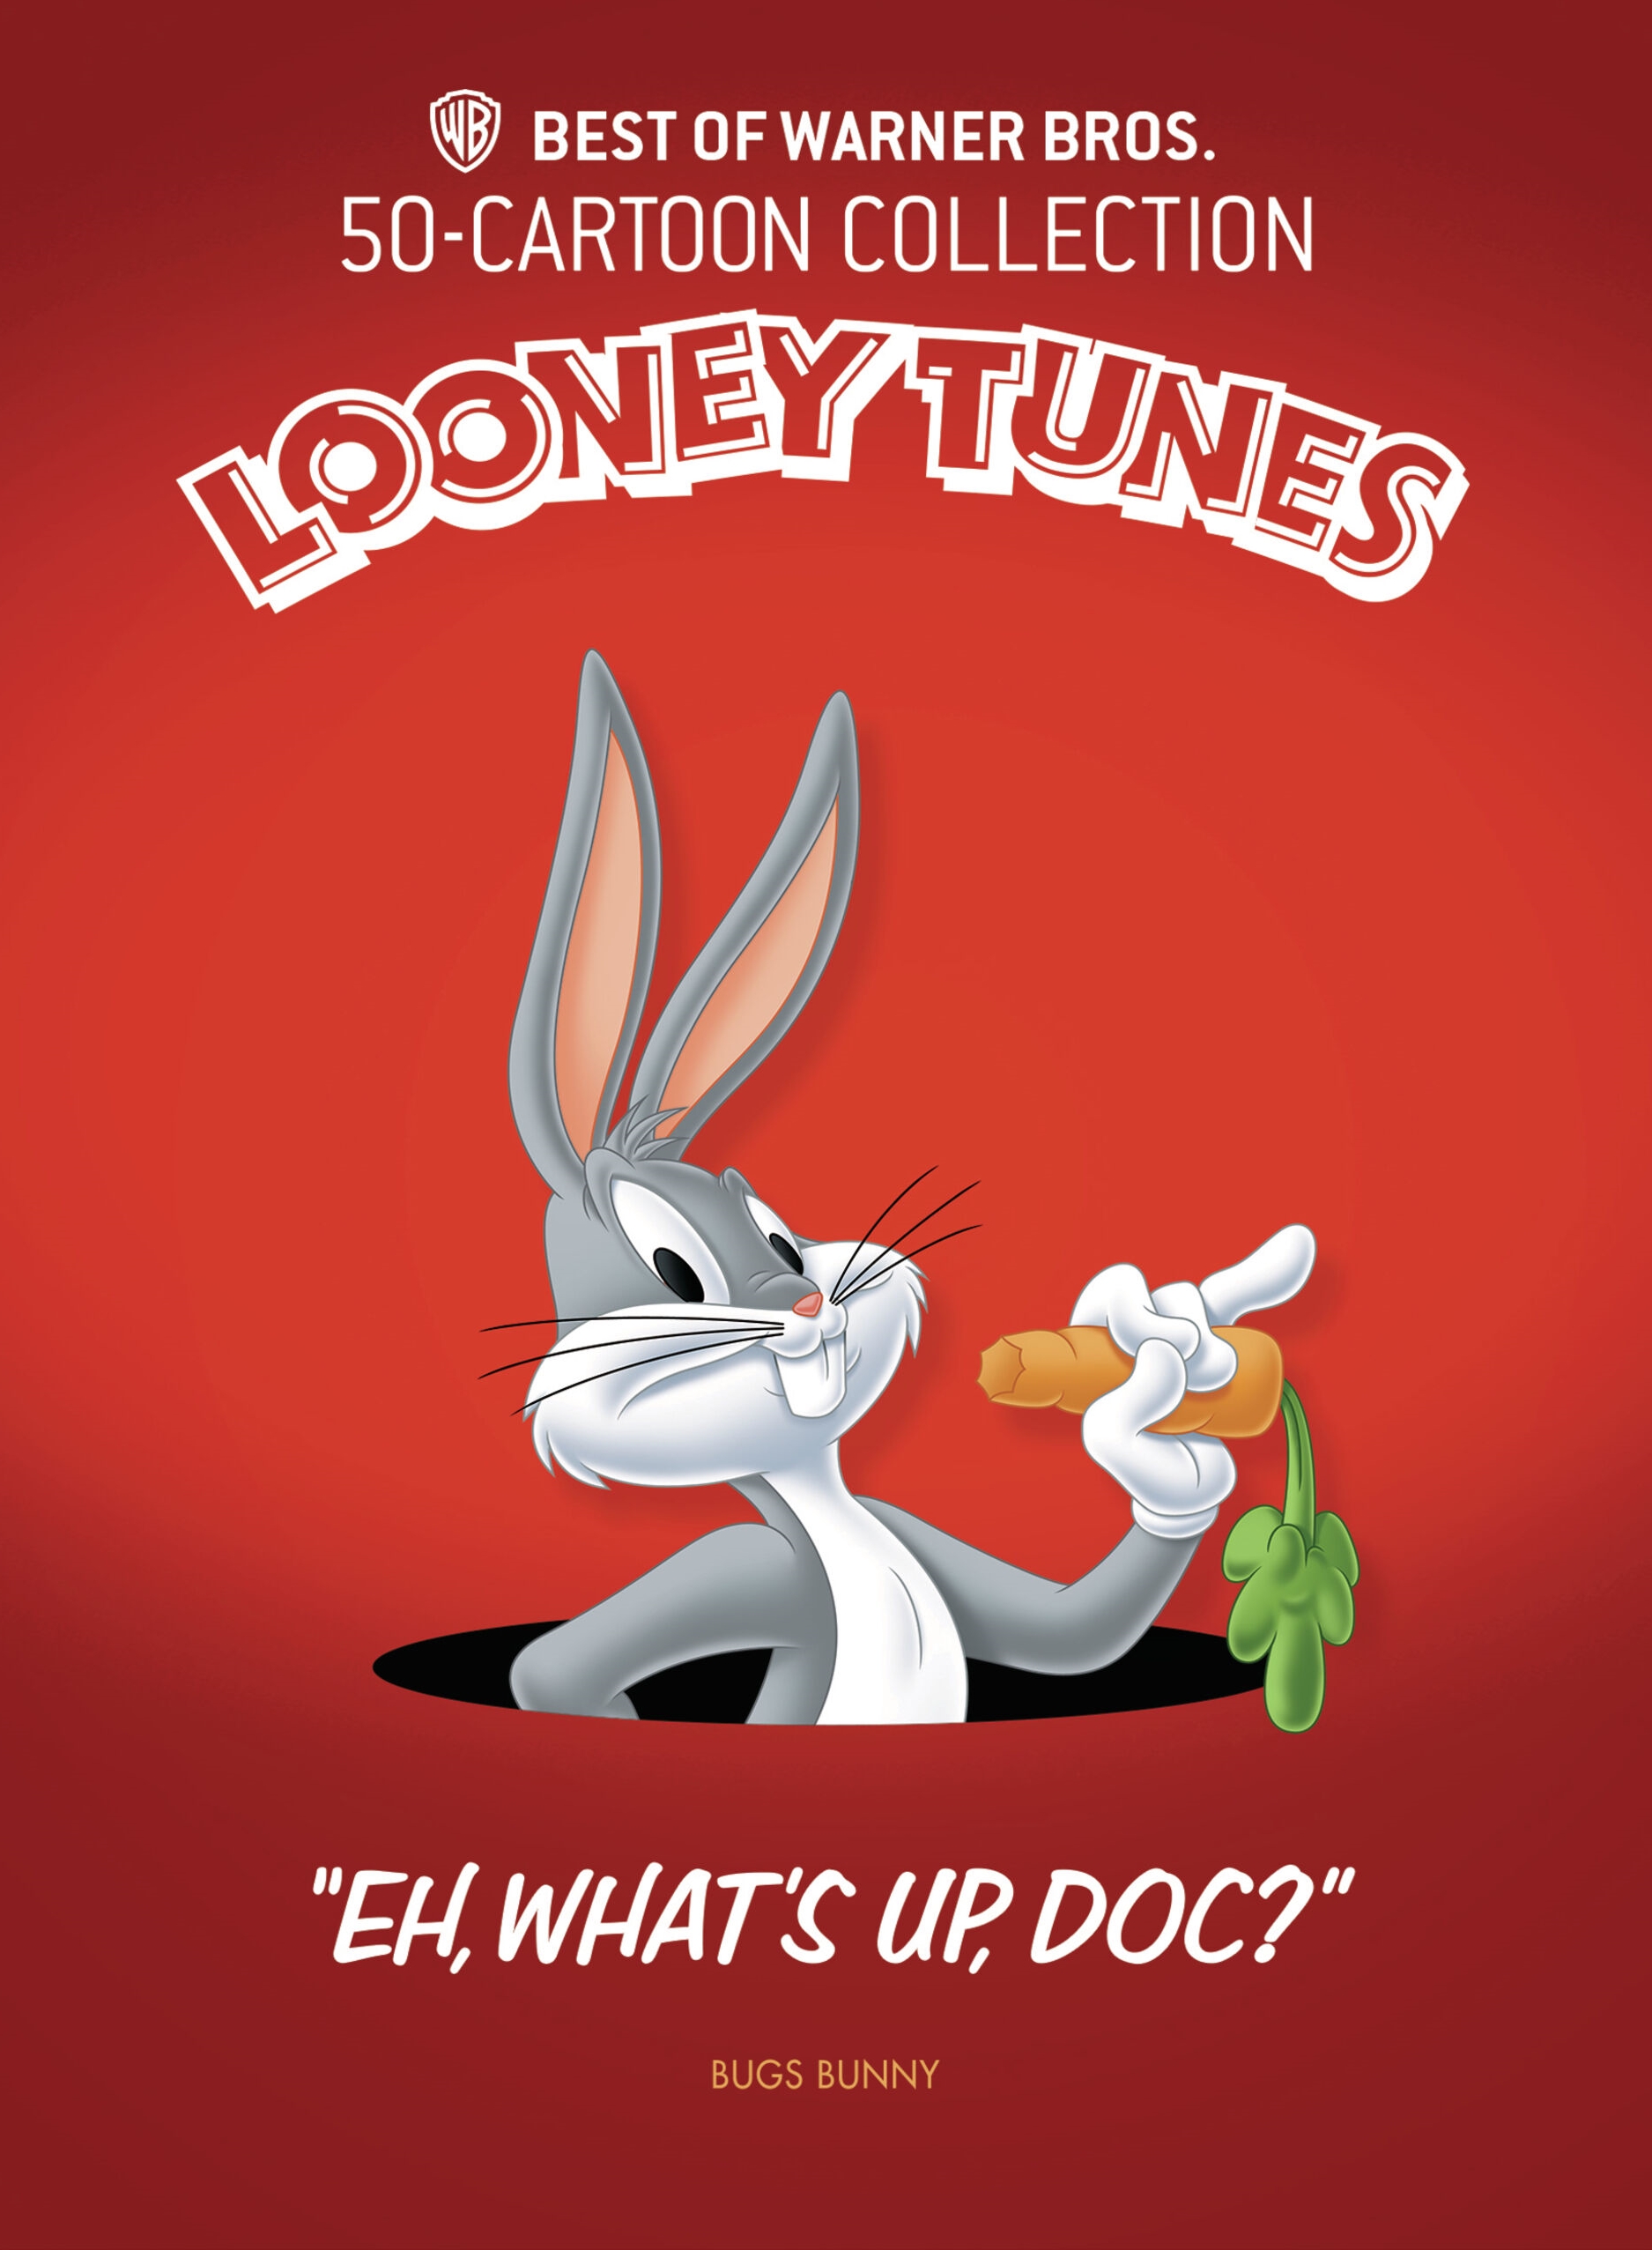 Resonar Jugar con aficionado The Best of Warner Bros. 50 Cartoon Collection Looney Tunes [DVD] - Best Buy